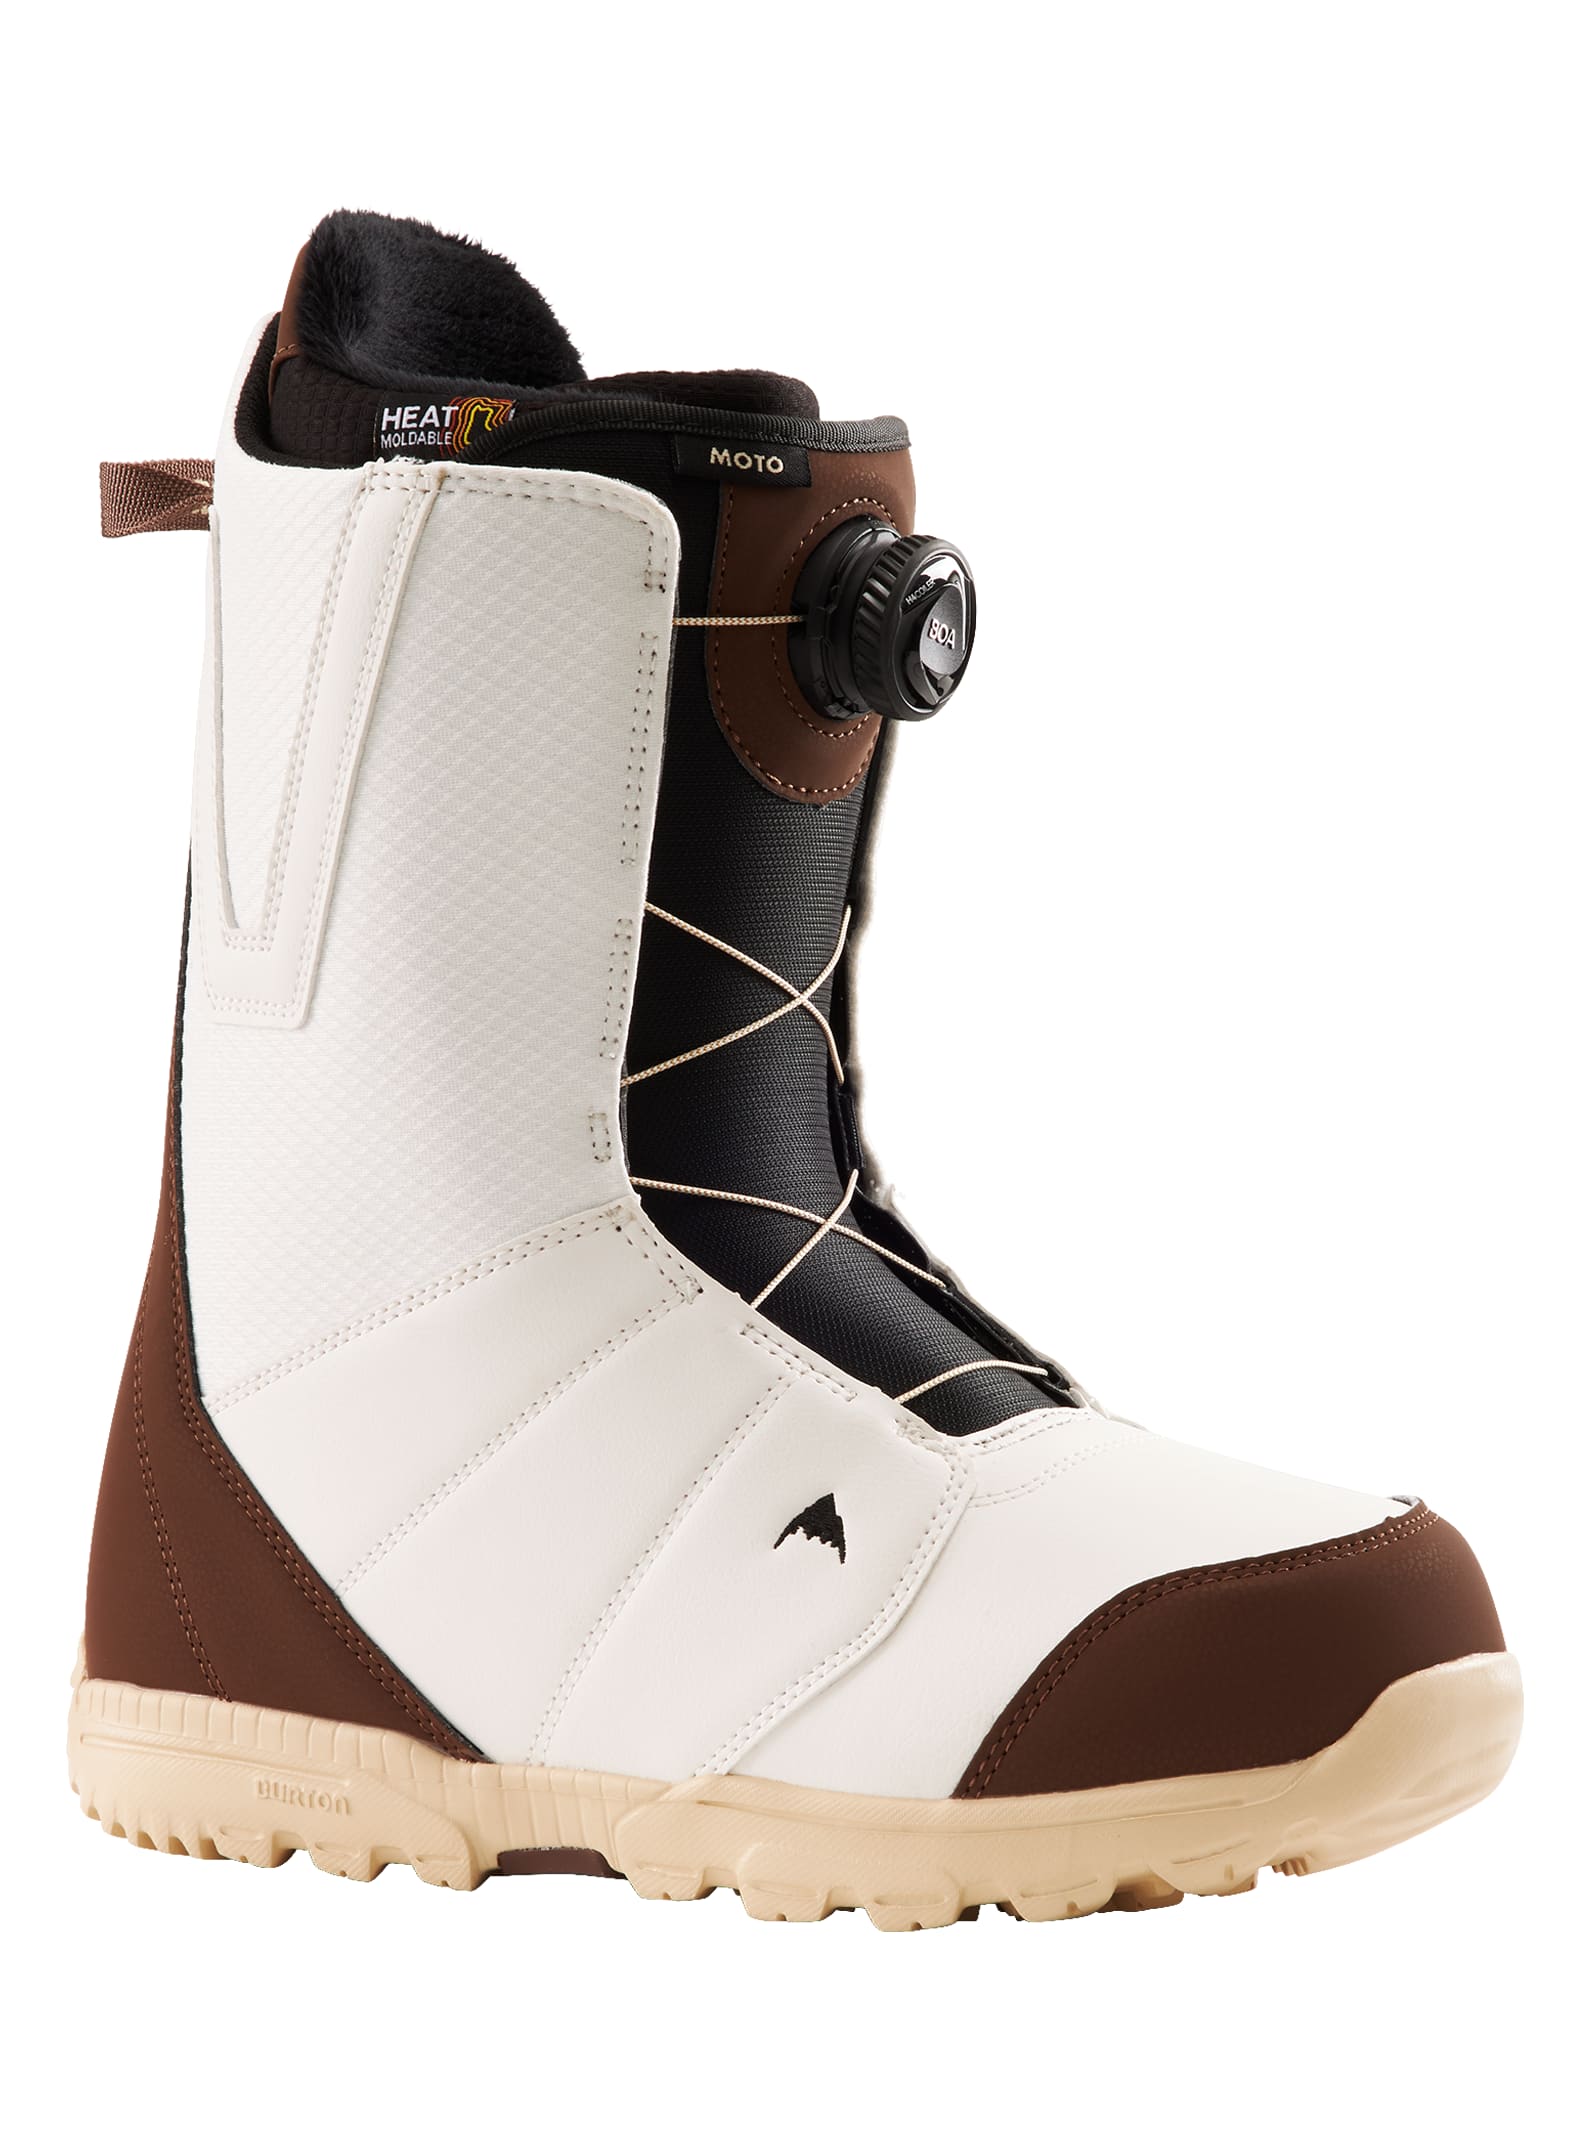 Men's Burton Moto BOA® Snowboard Boots - Wide | Burton.com Winter